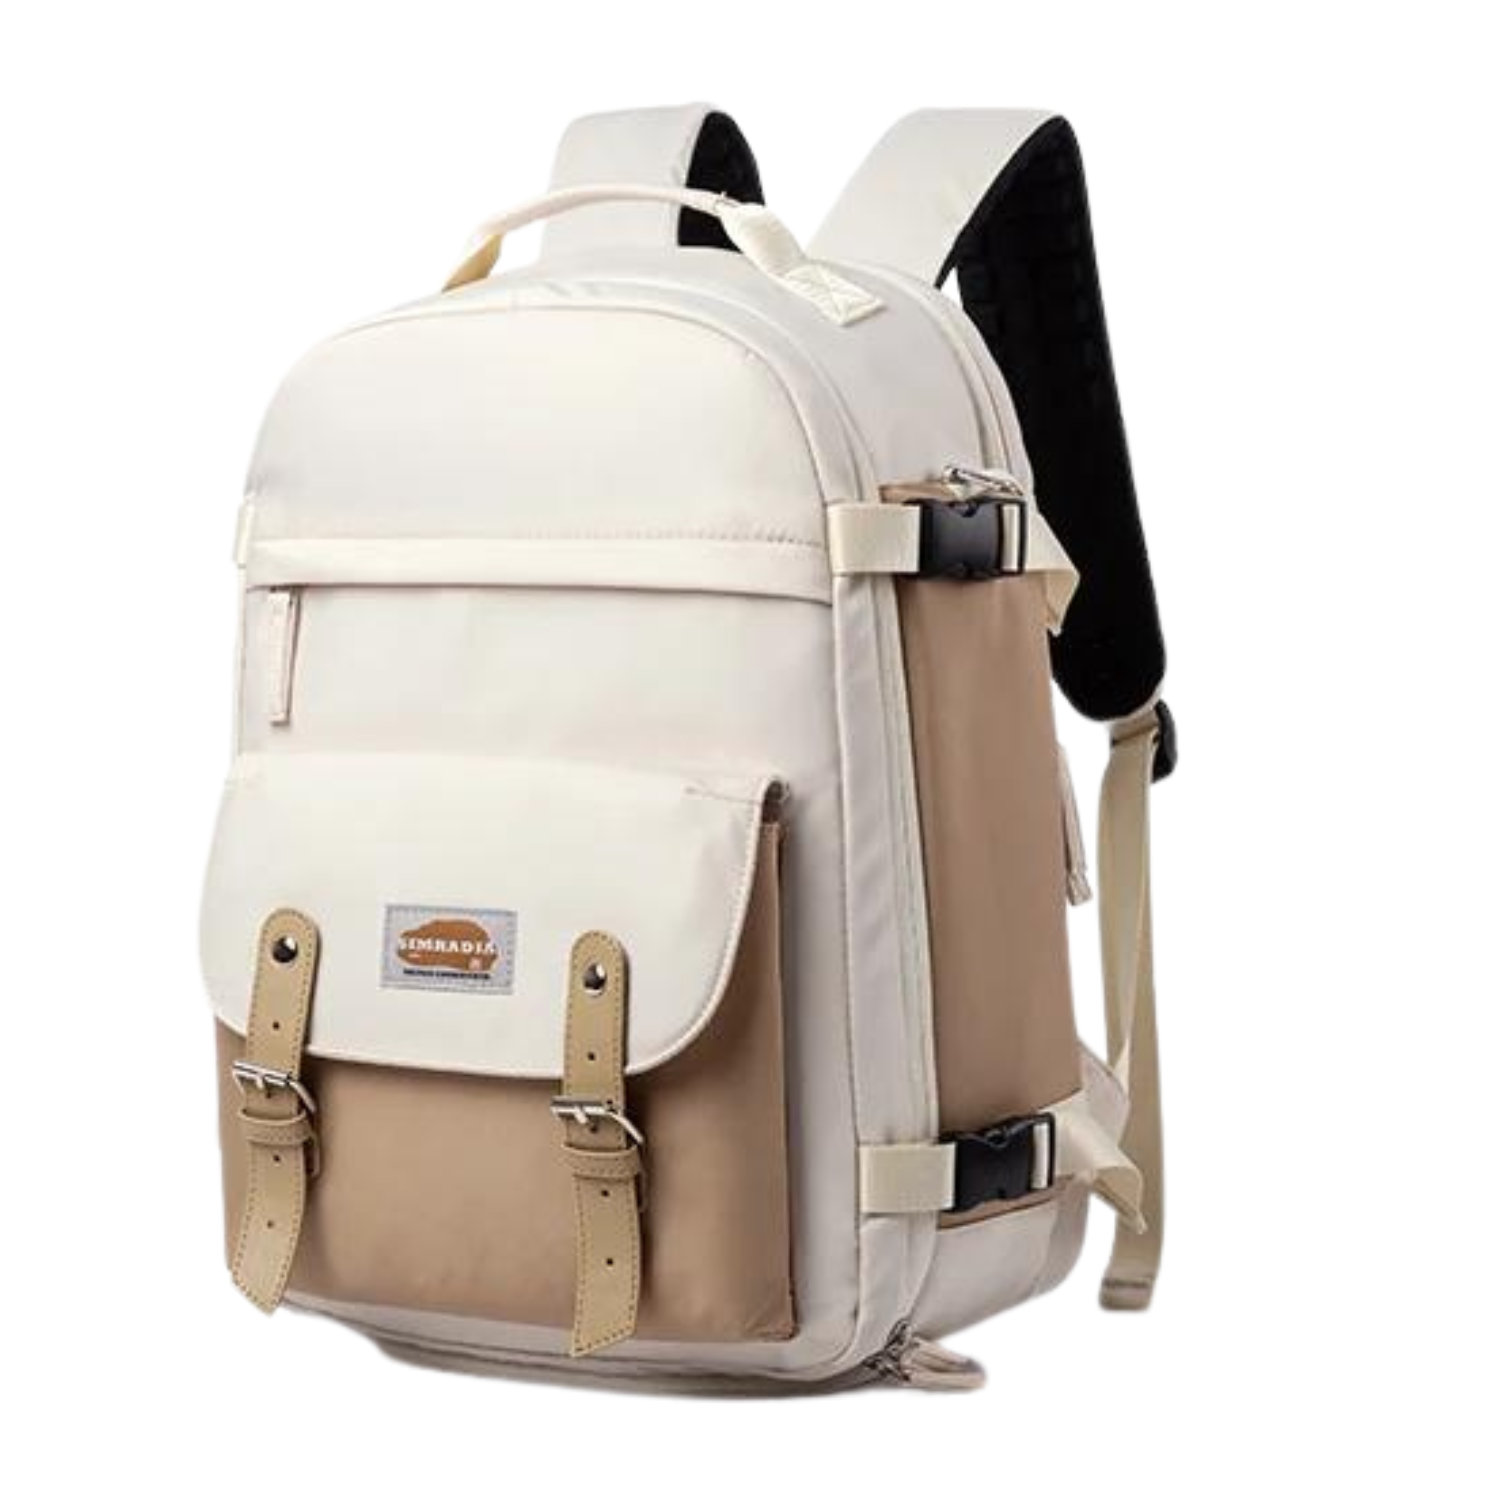 Chic Urban Explorer Backpack for Modern Women